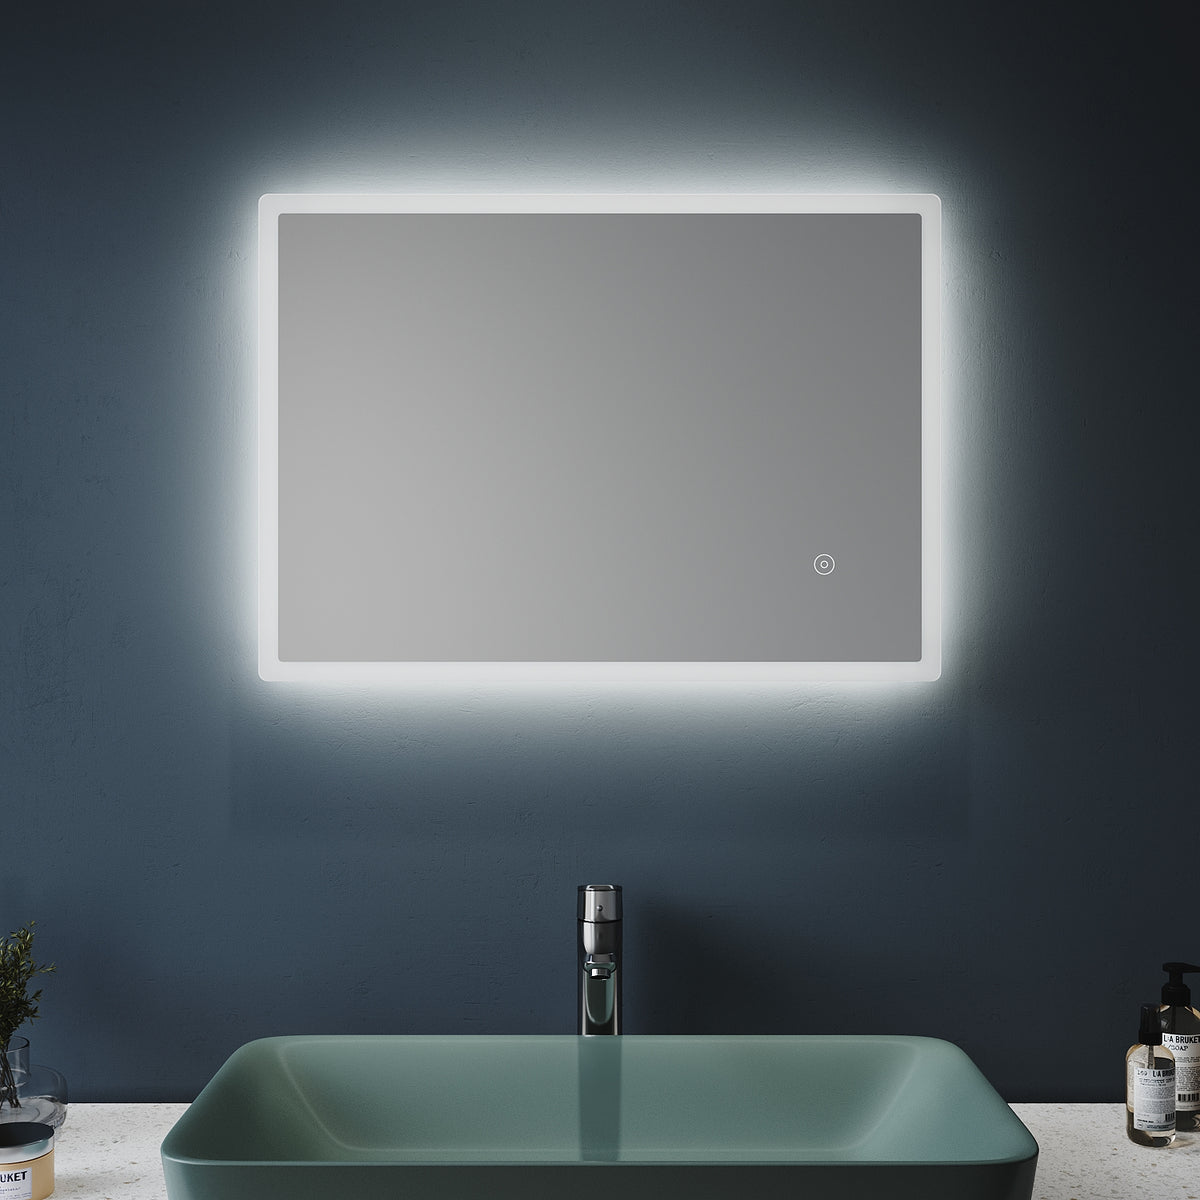 SONNI Badspiegel mit Beleuchtung 50x70cm beschlagfrei Wandspiegel Badezimmerspiegel mit Touchschalter Kaltweiß 6400K Badspiegel IP44 Energiesparend